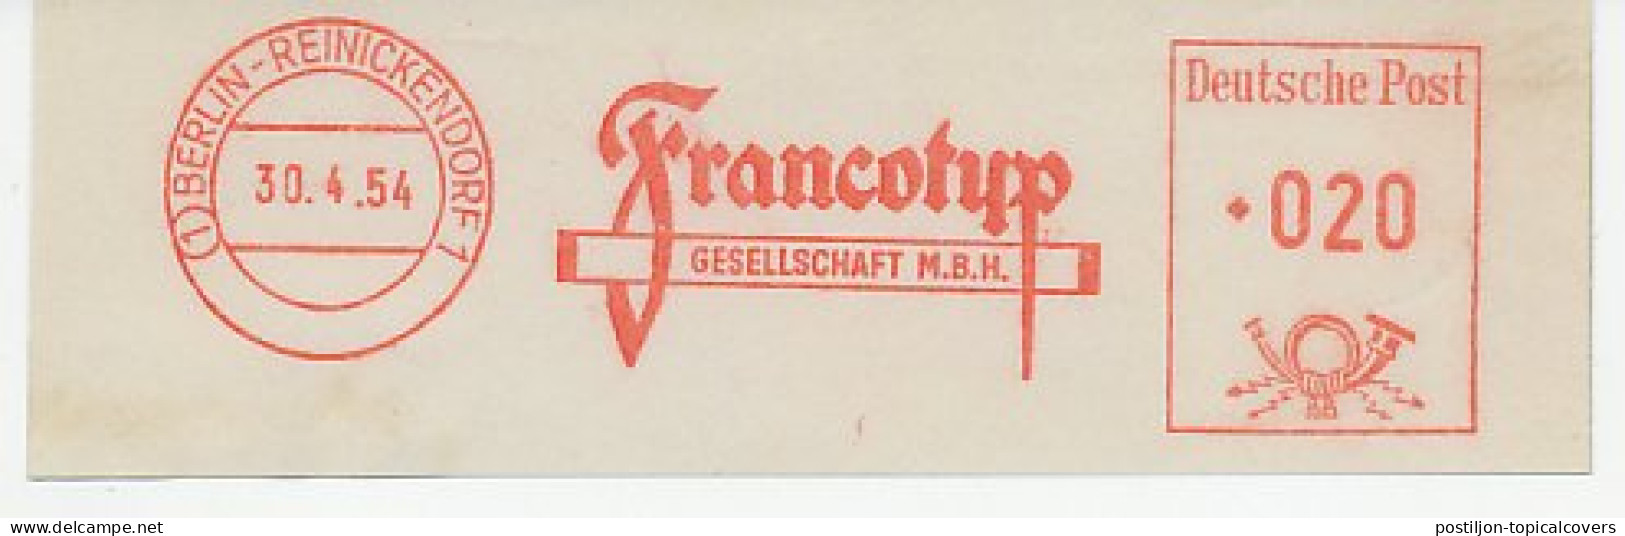 Meter Cut Germany 1954 Francotyp - Automatenmarken [ATM]